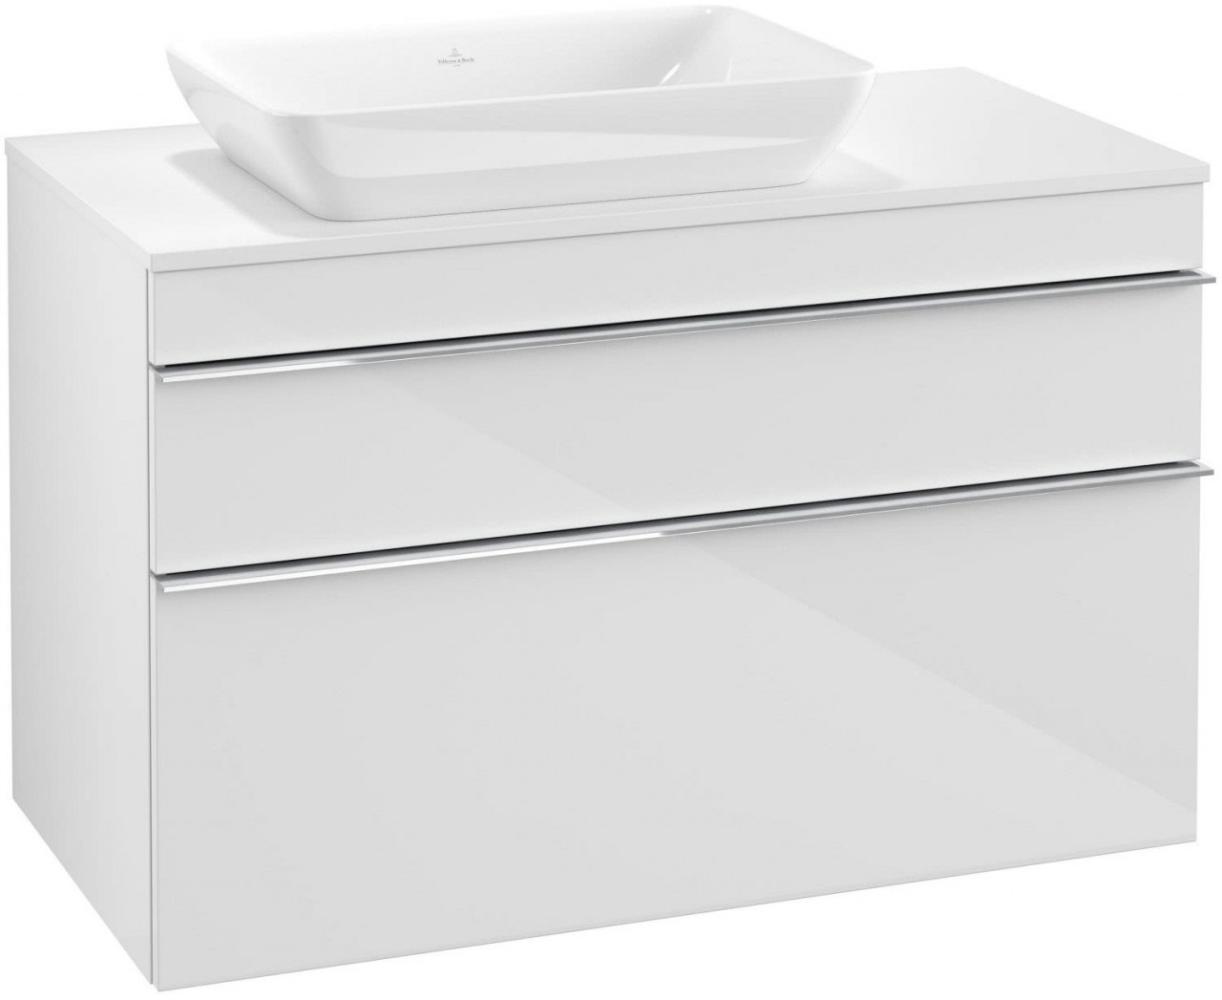 Villeroy & Boch VENTICELLO Waschtischunterschrank 95 cm breit, Weiß, Griff Chrom, für Becken links Bild 1